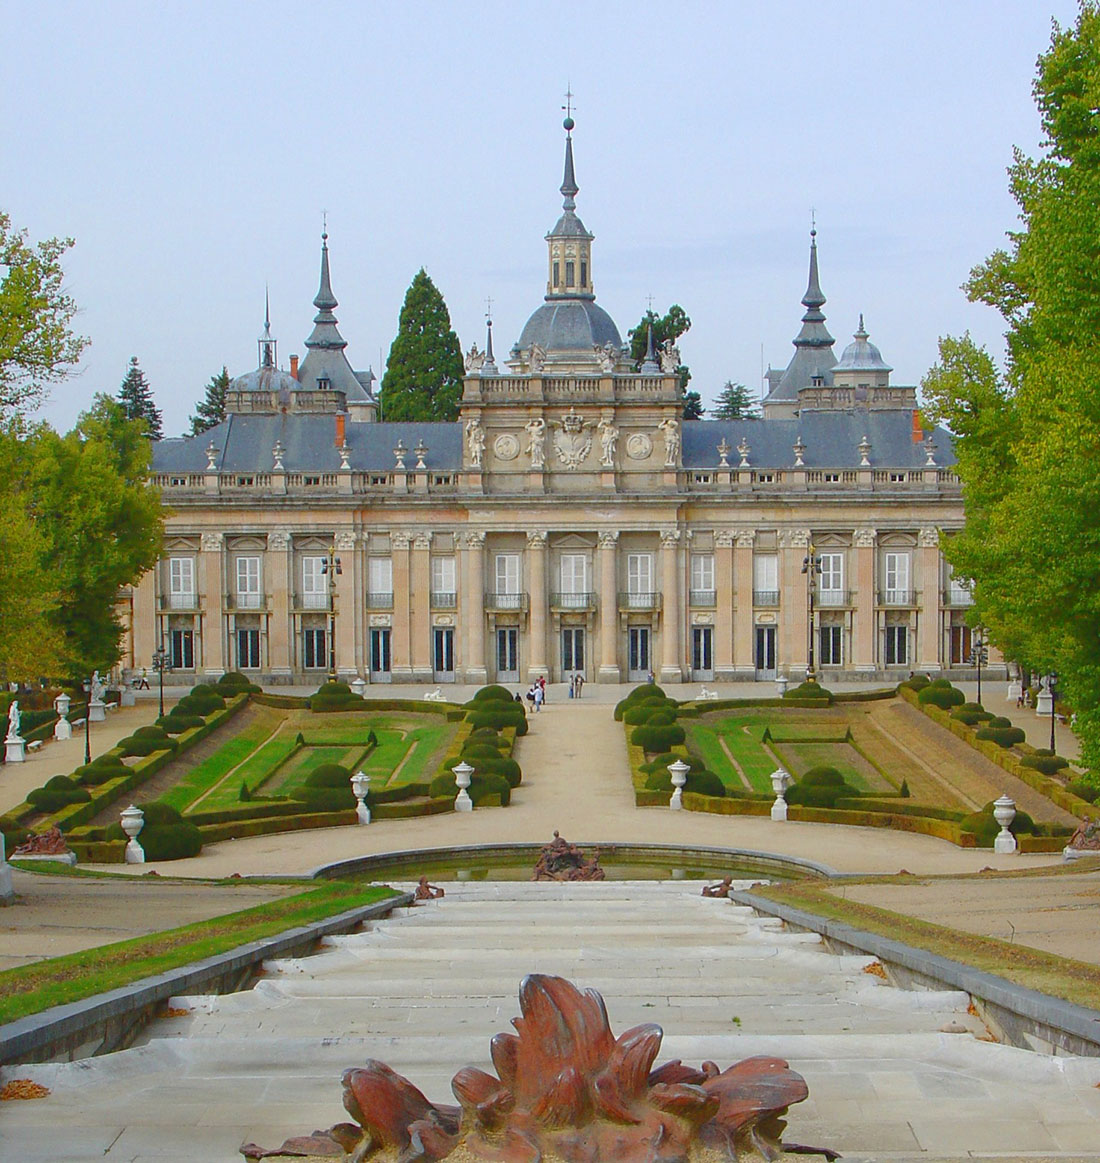 The Royal Palace of La Granja